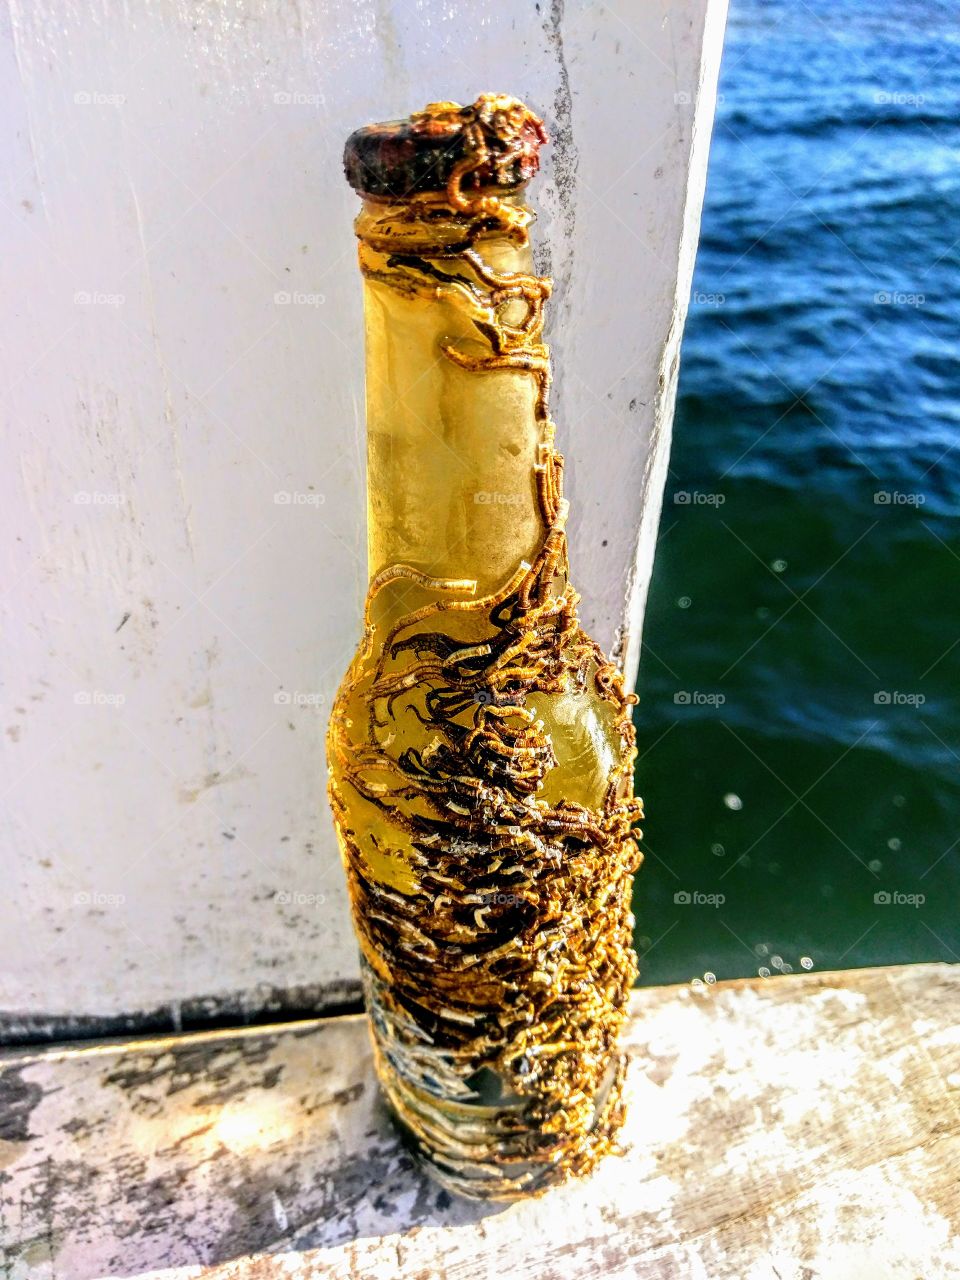 Ocean bottle!